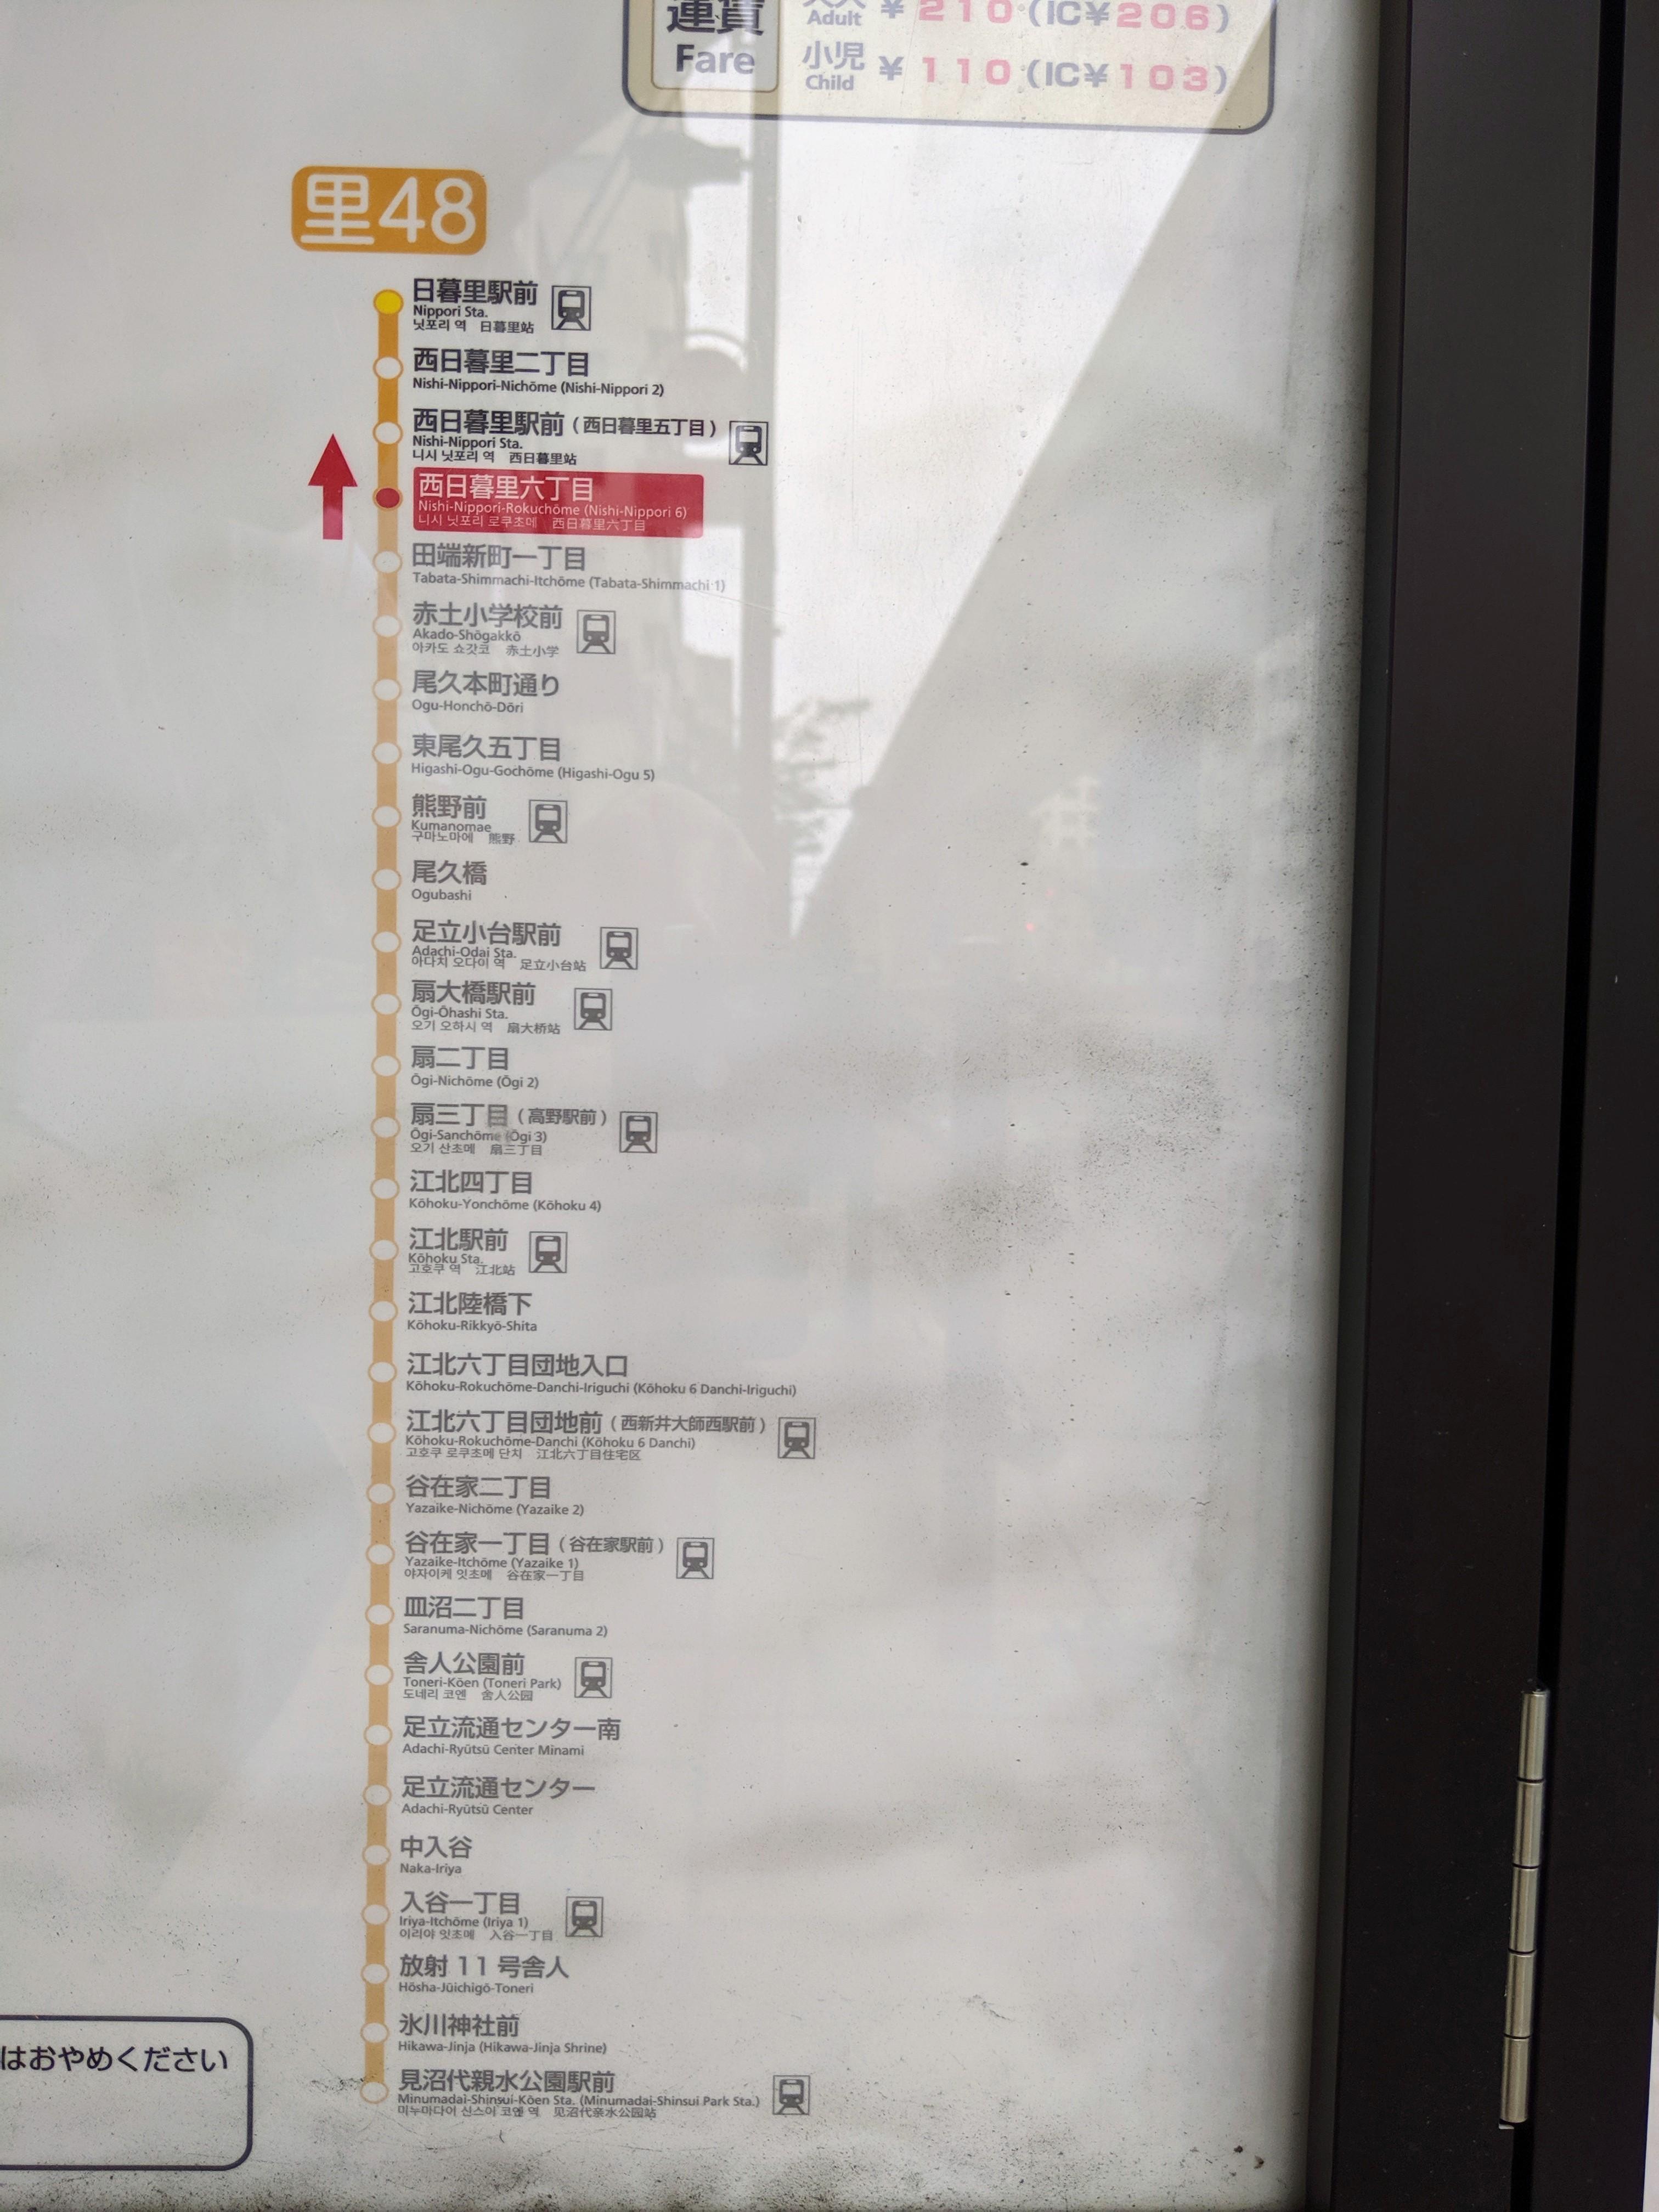 マンション目の前のバスの時刻表です。